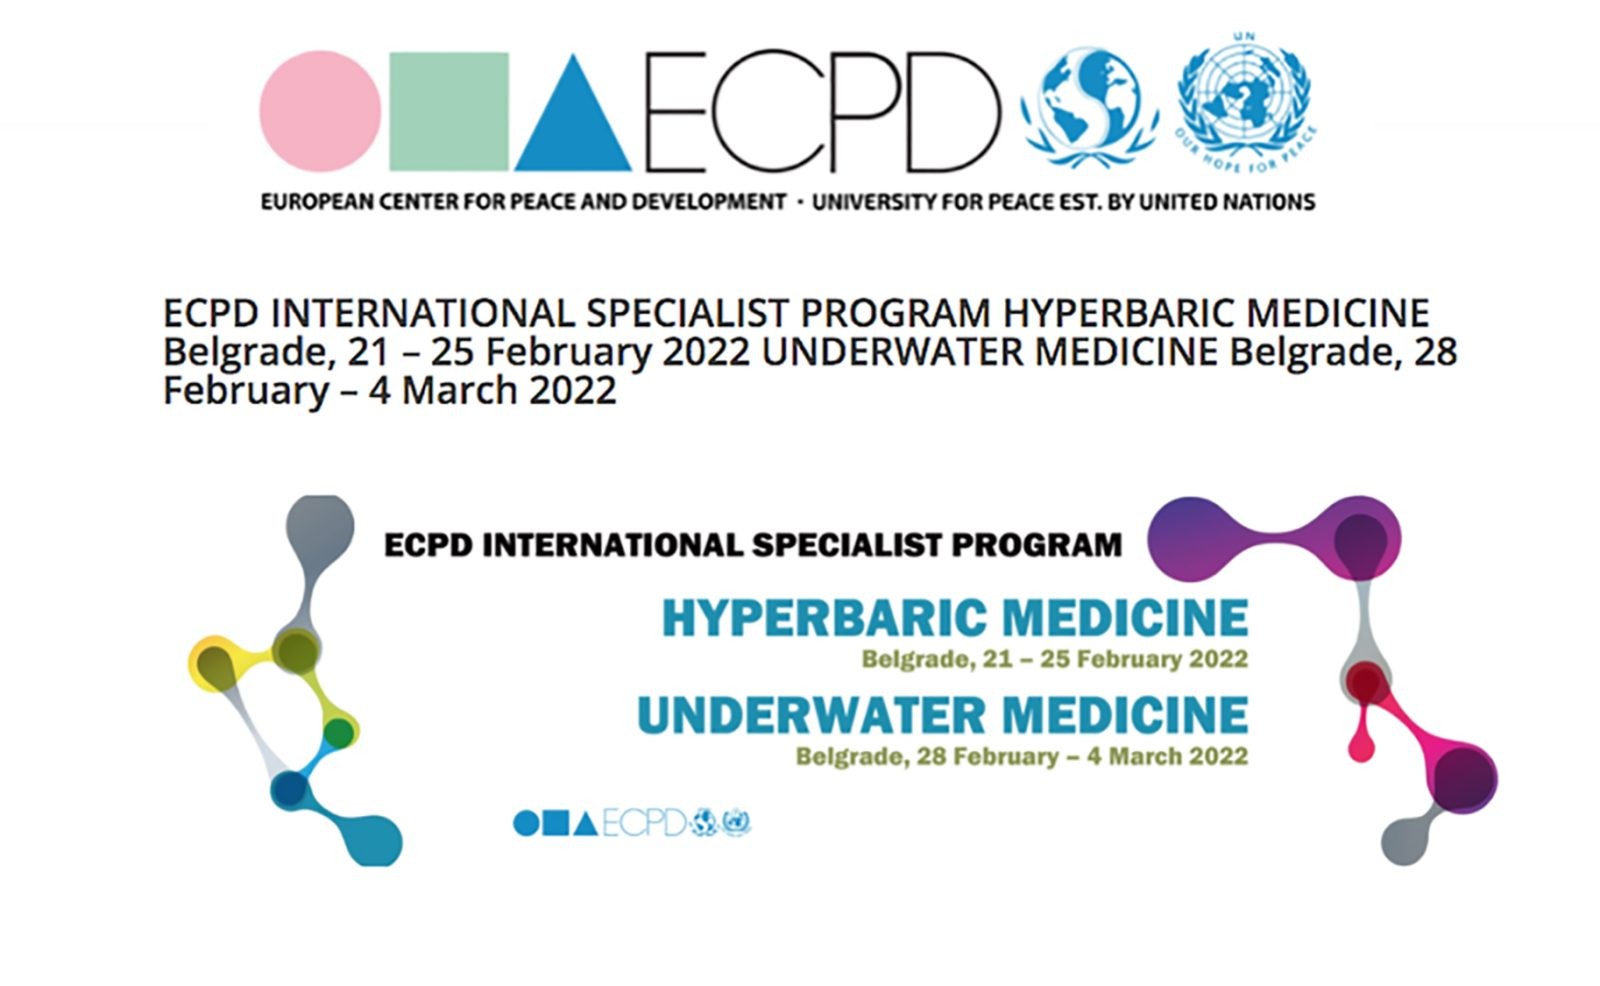 ECPD INTERNATIONAL SPECIALIST PROGRAM HYPERBARIC MEDICINE & UNDERWATER MEDICINE